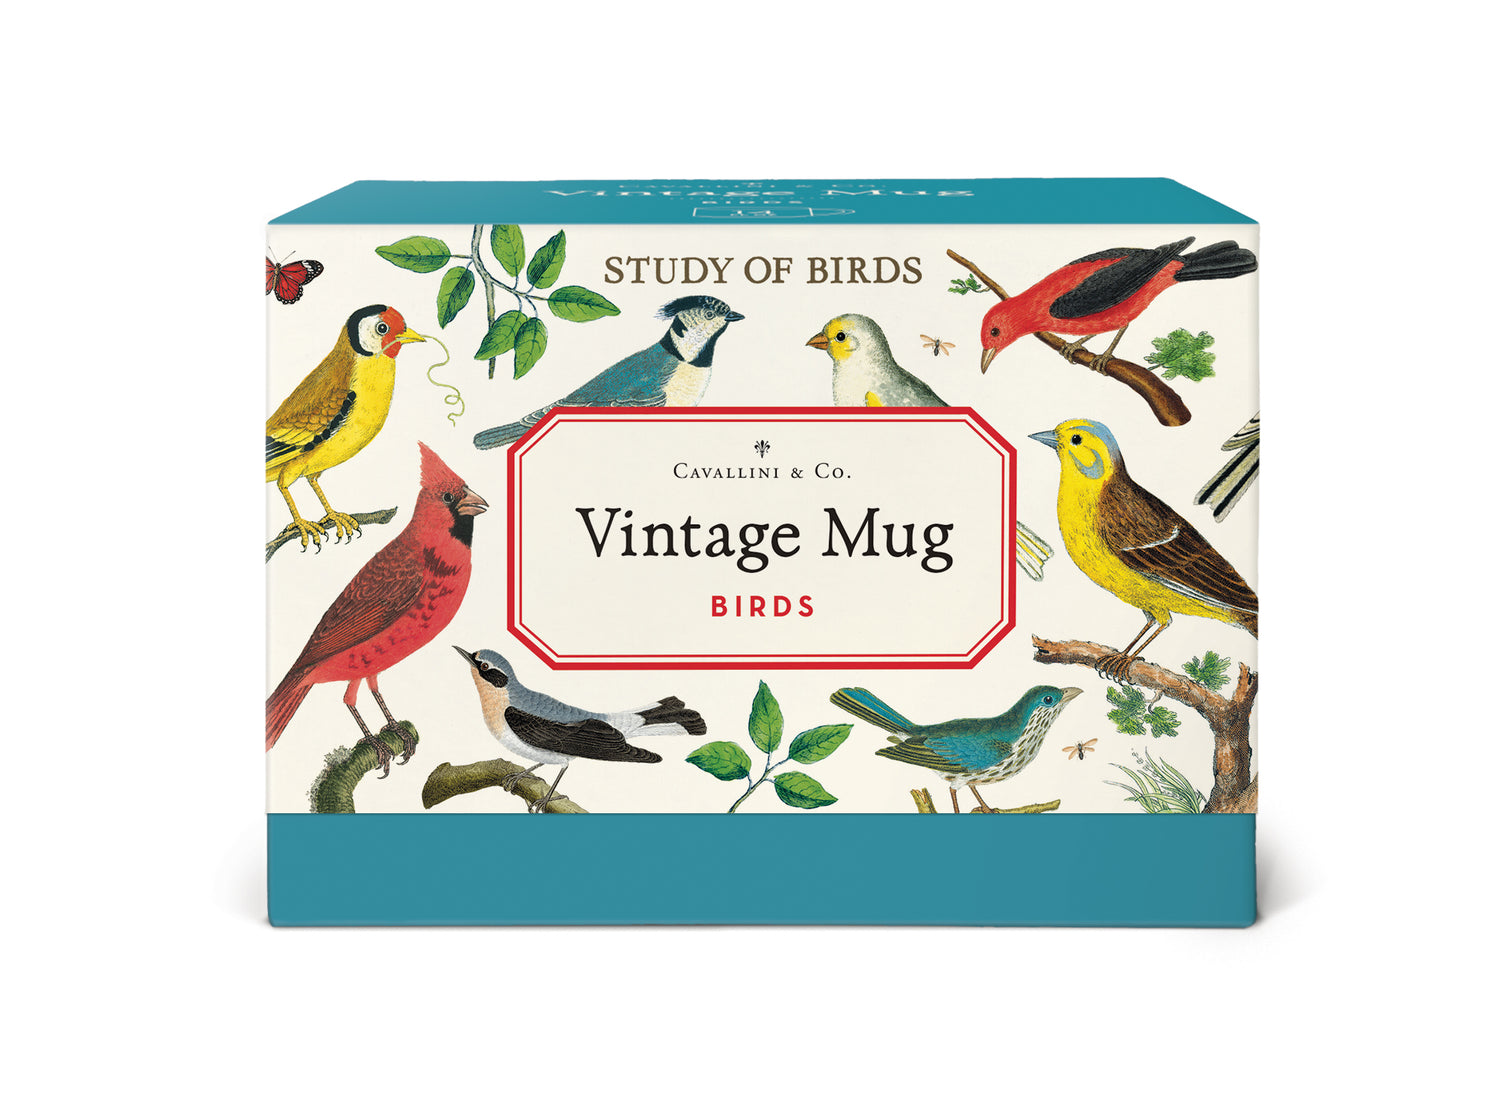 Birds Ceramic Mug